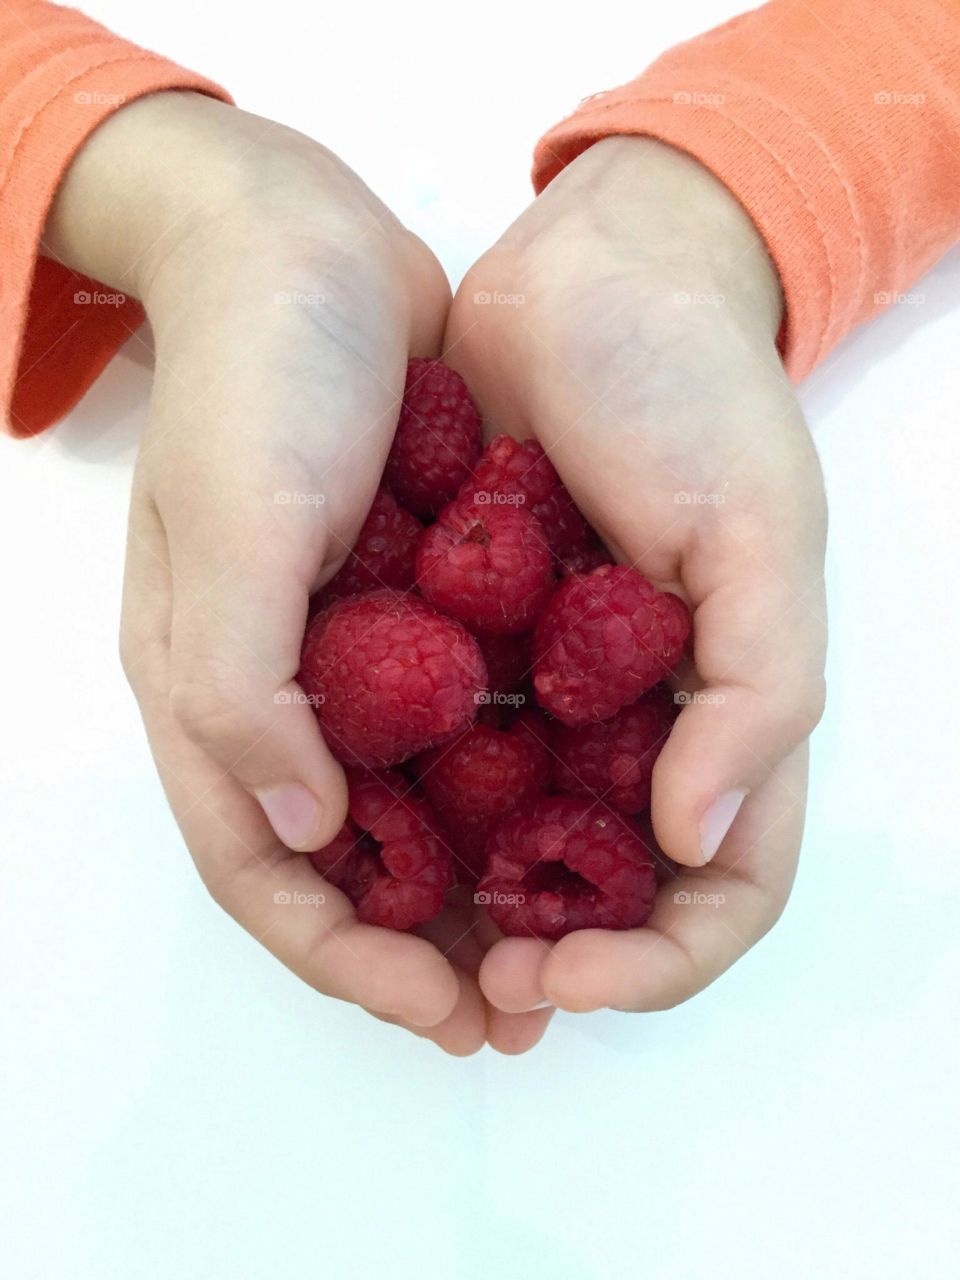 raspberries in hands
